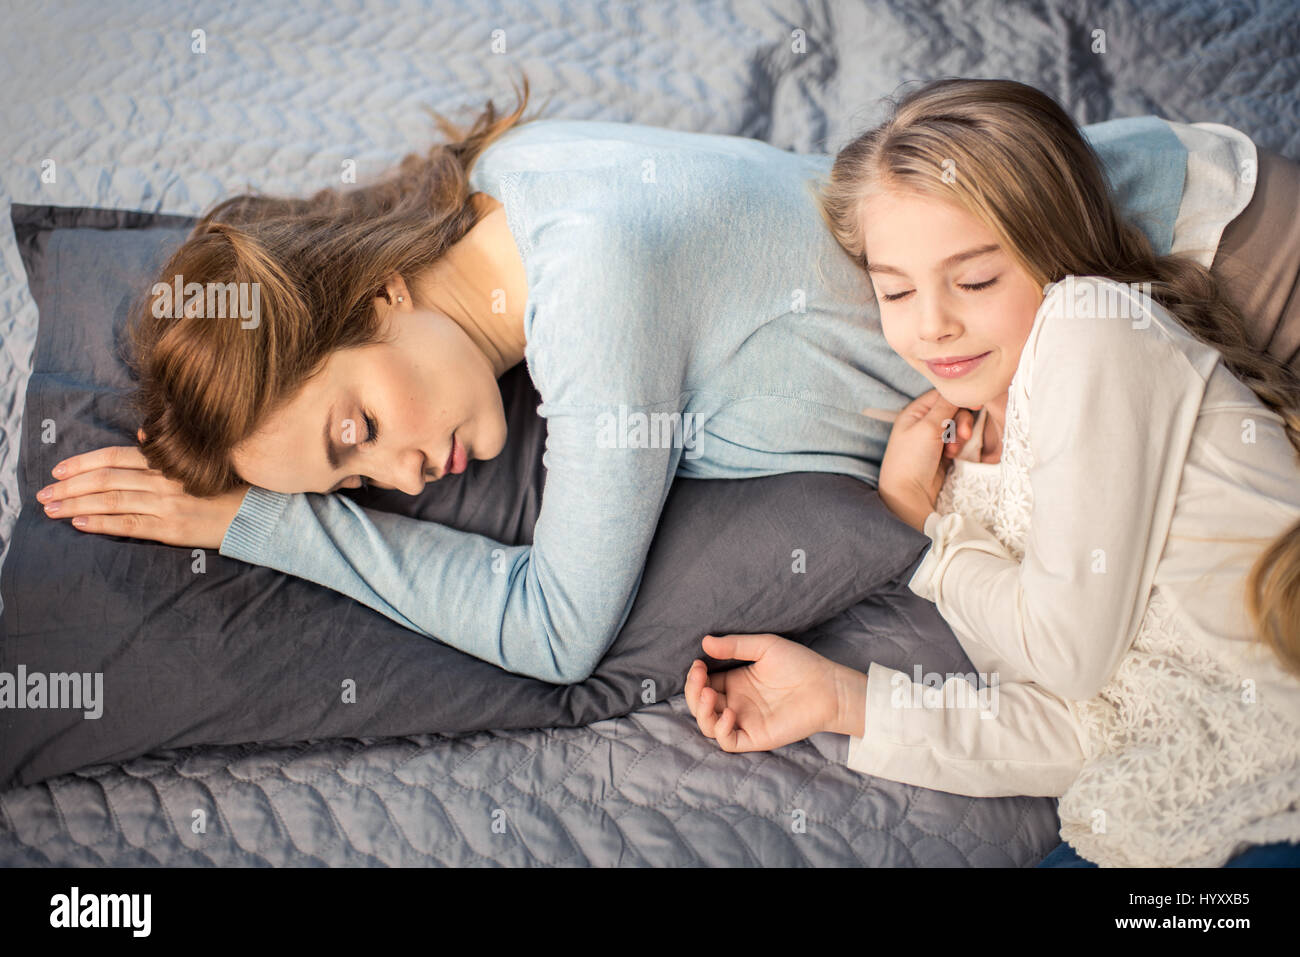 Она лежит как маме. Мама с дочкой лежат на кровати. Мама и дочь валяются в кровати. Дочка лежит на маме. Дочь ледижит на кровати.